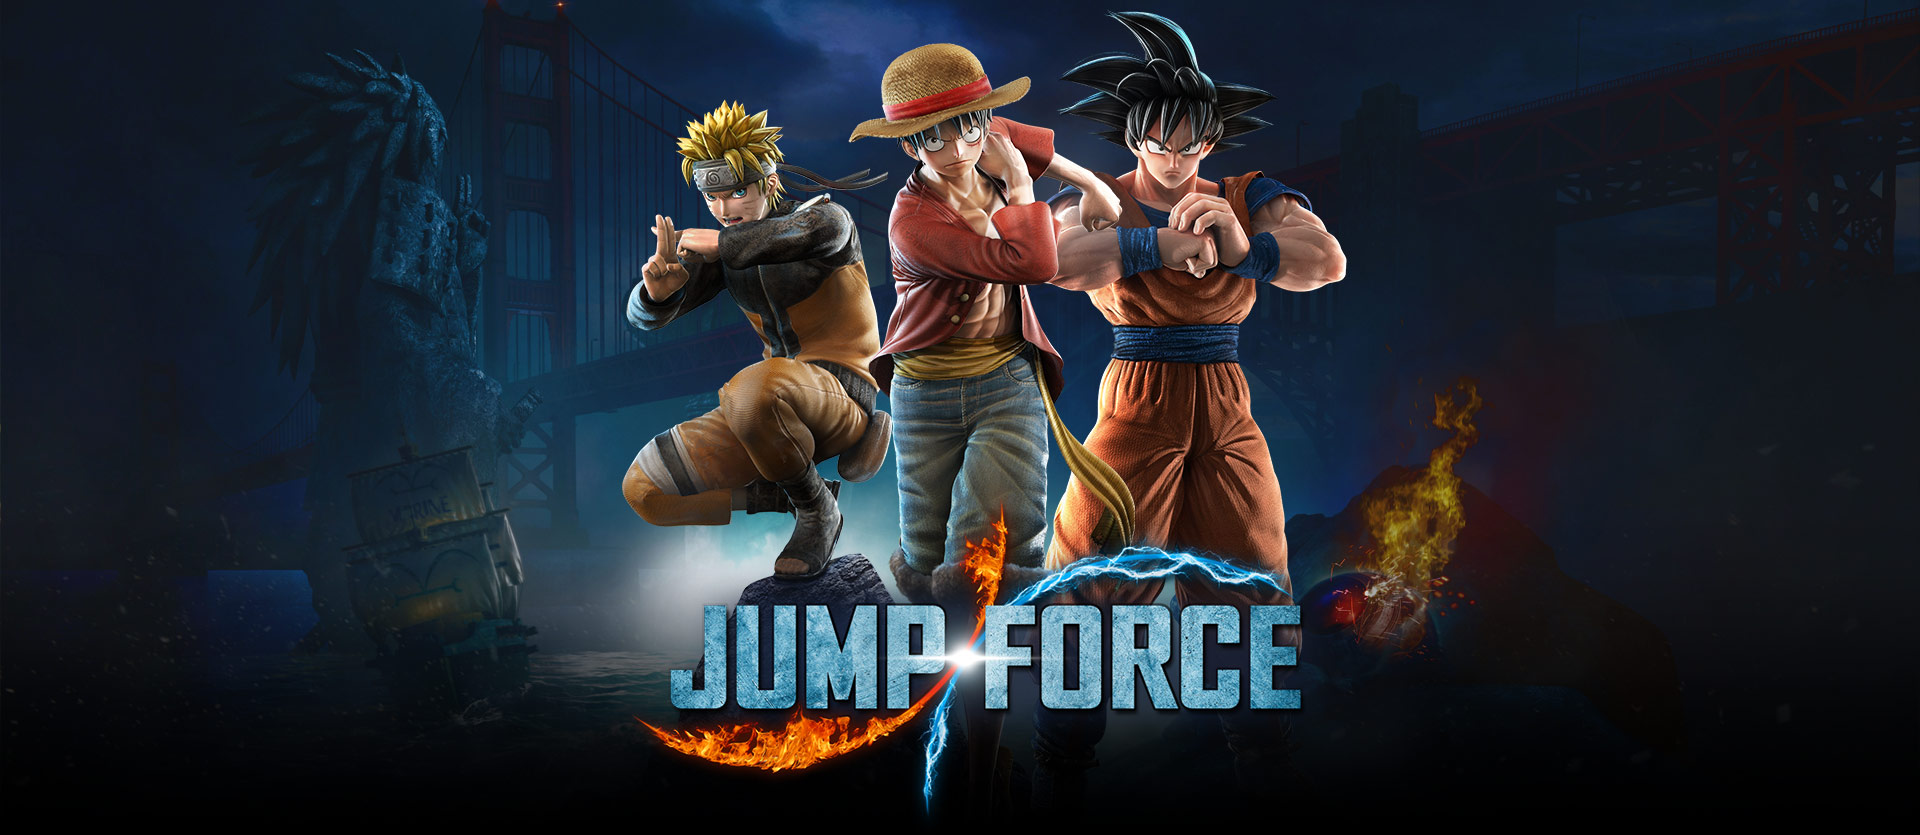 JUMP FORCE - Tải game - Download game Đối kháng hay nhất 2019